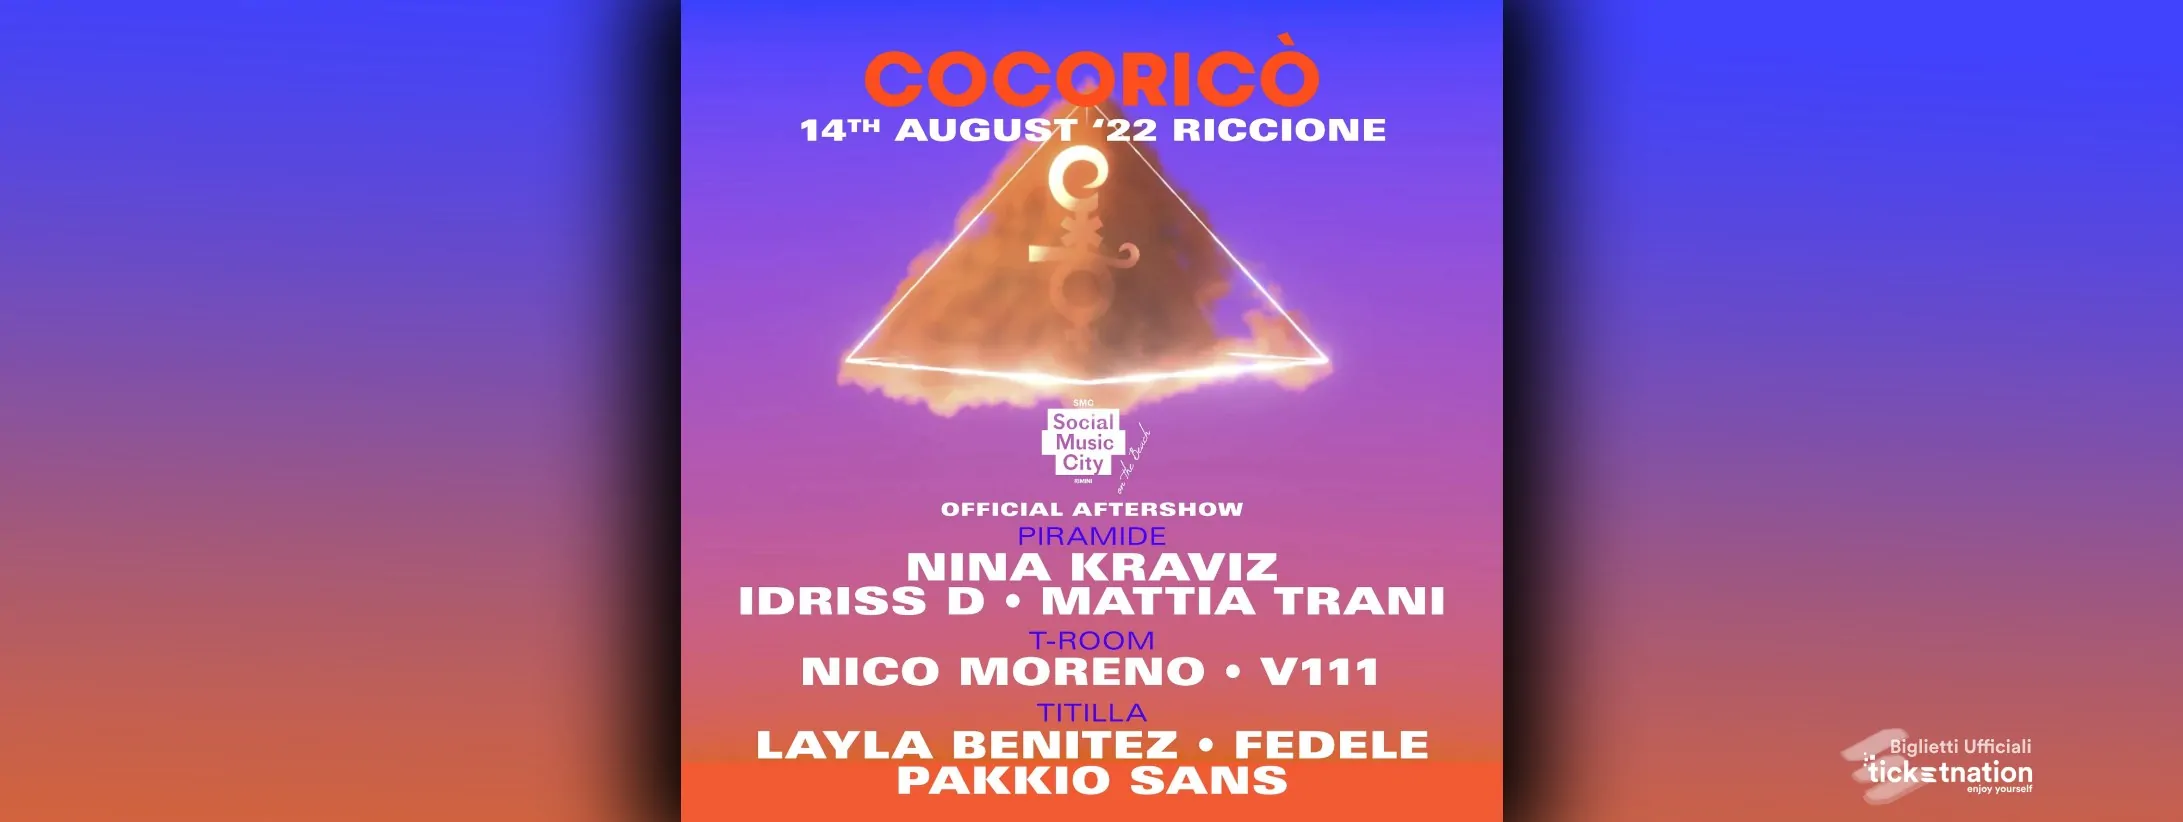 Nina-Kraviz-Cocoricò-ago-2022